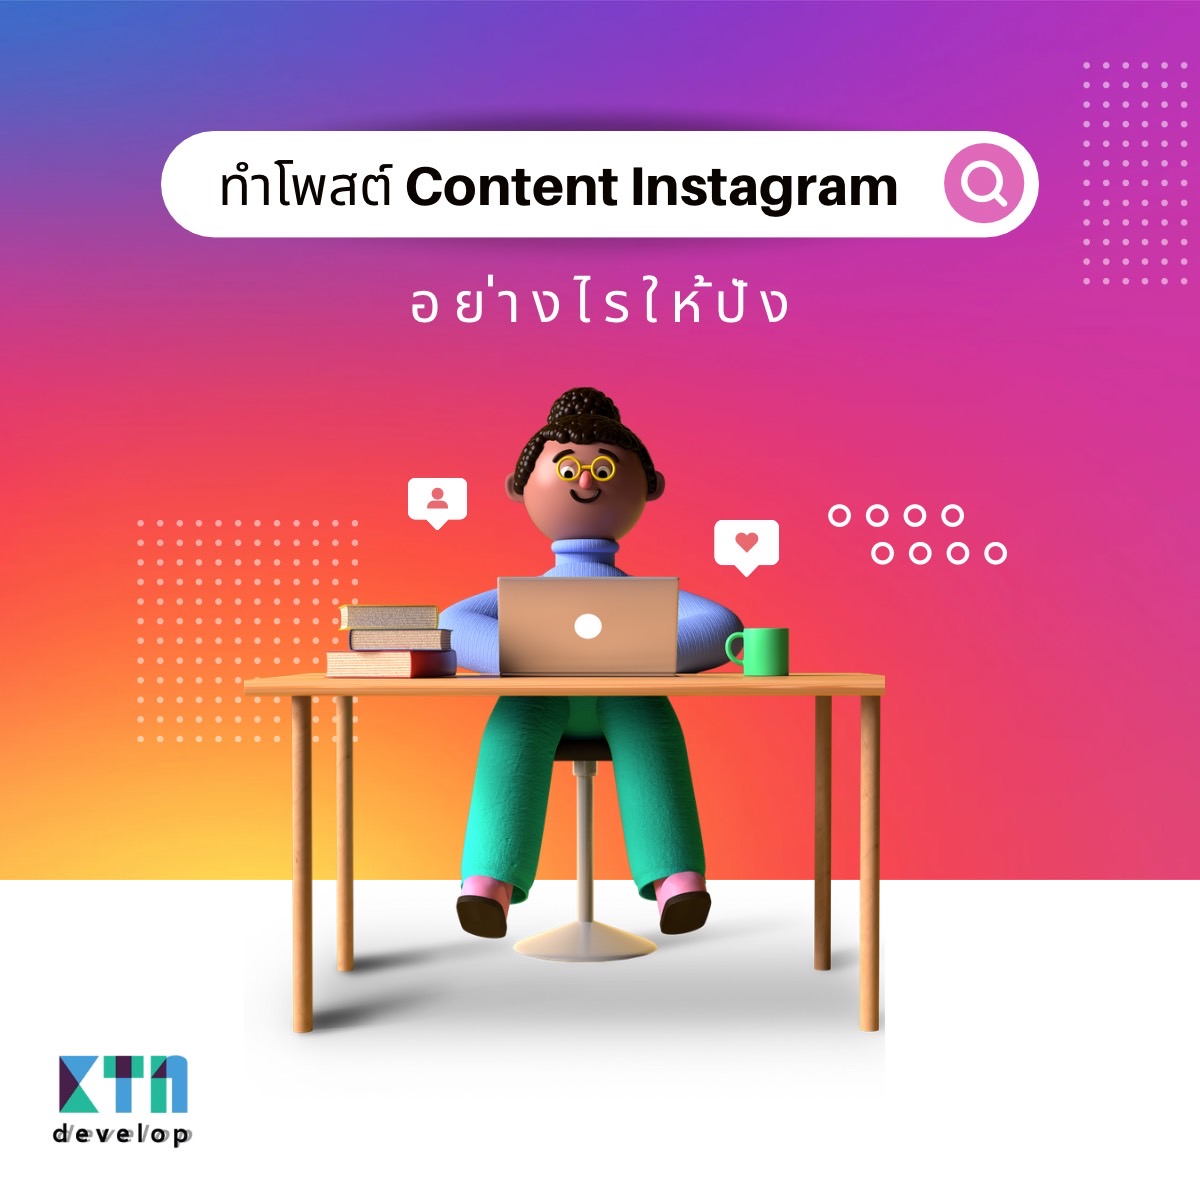 ทำโพสต์ Content Instagram อย่างไรให้ปัง